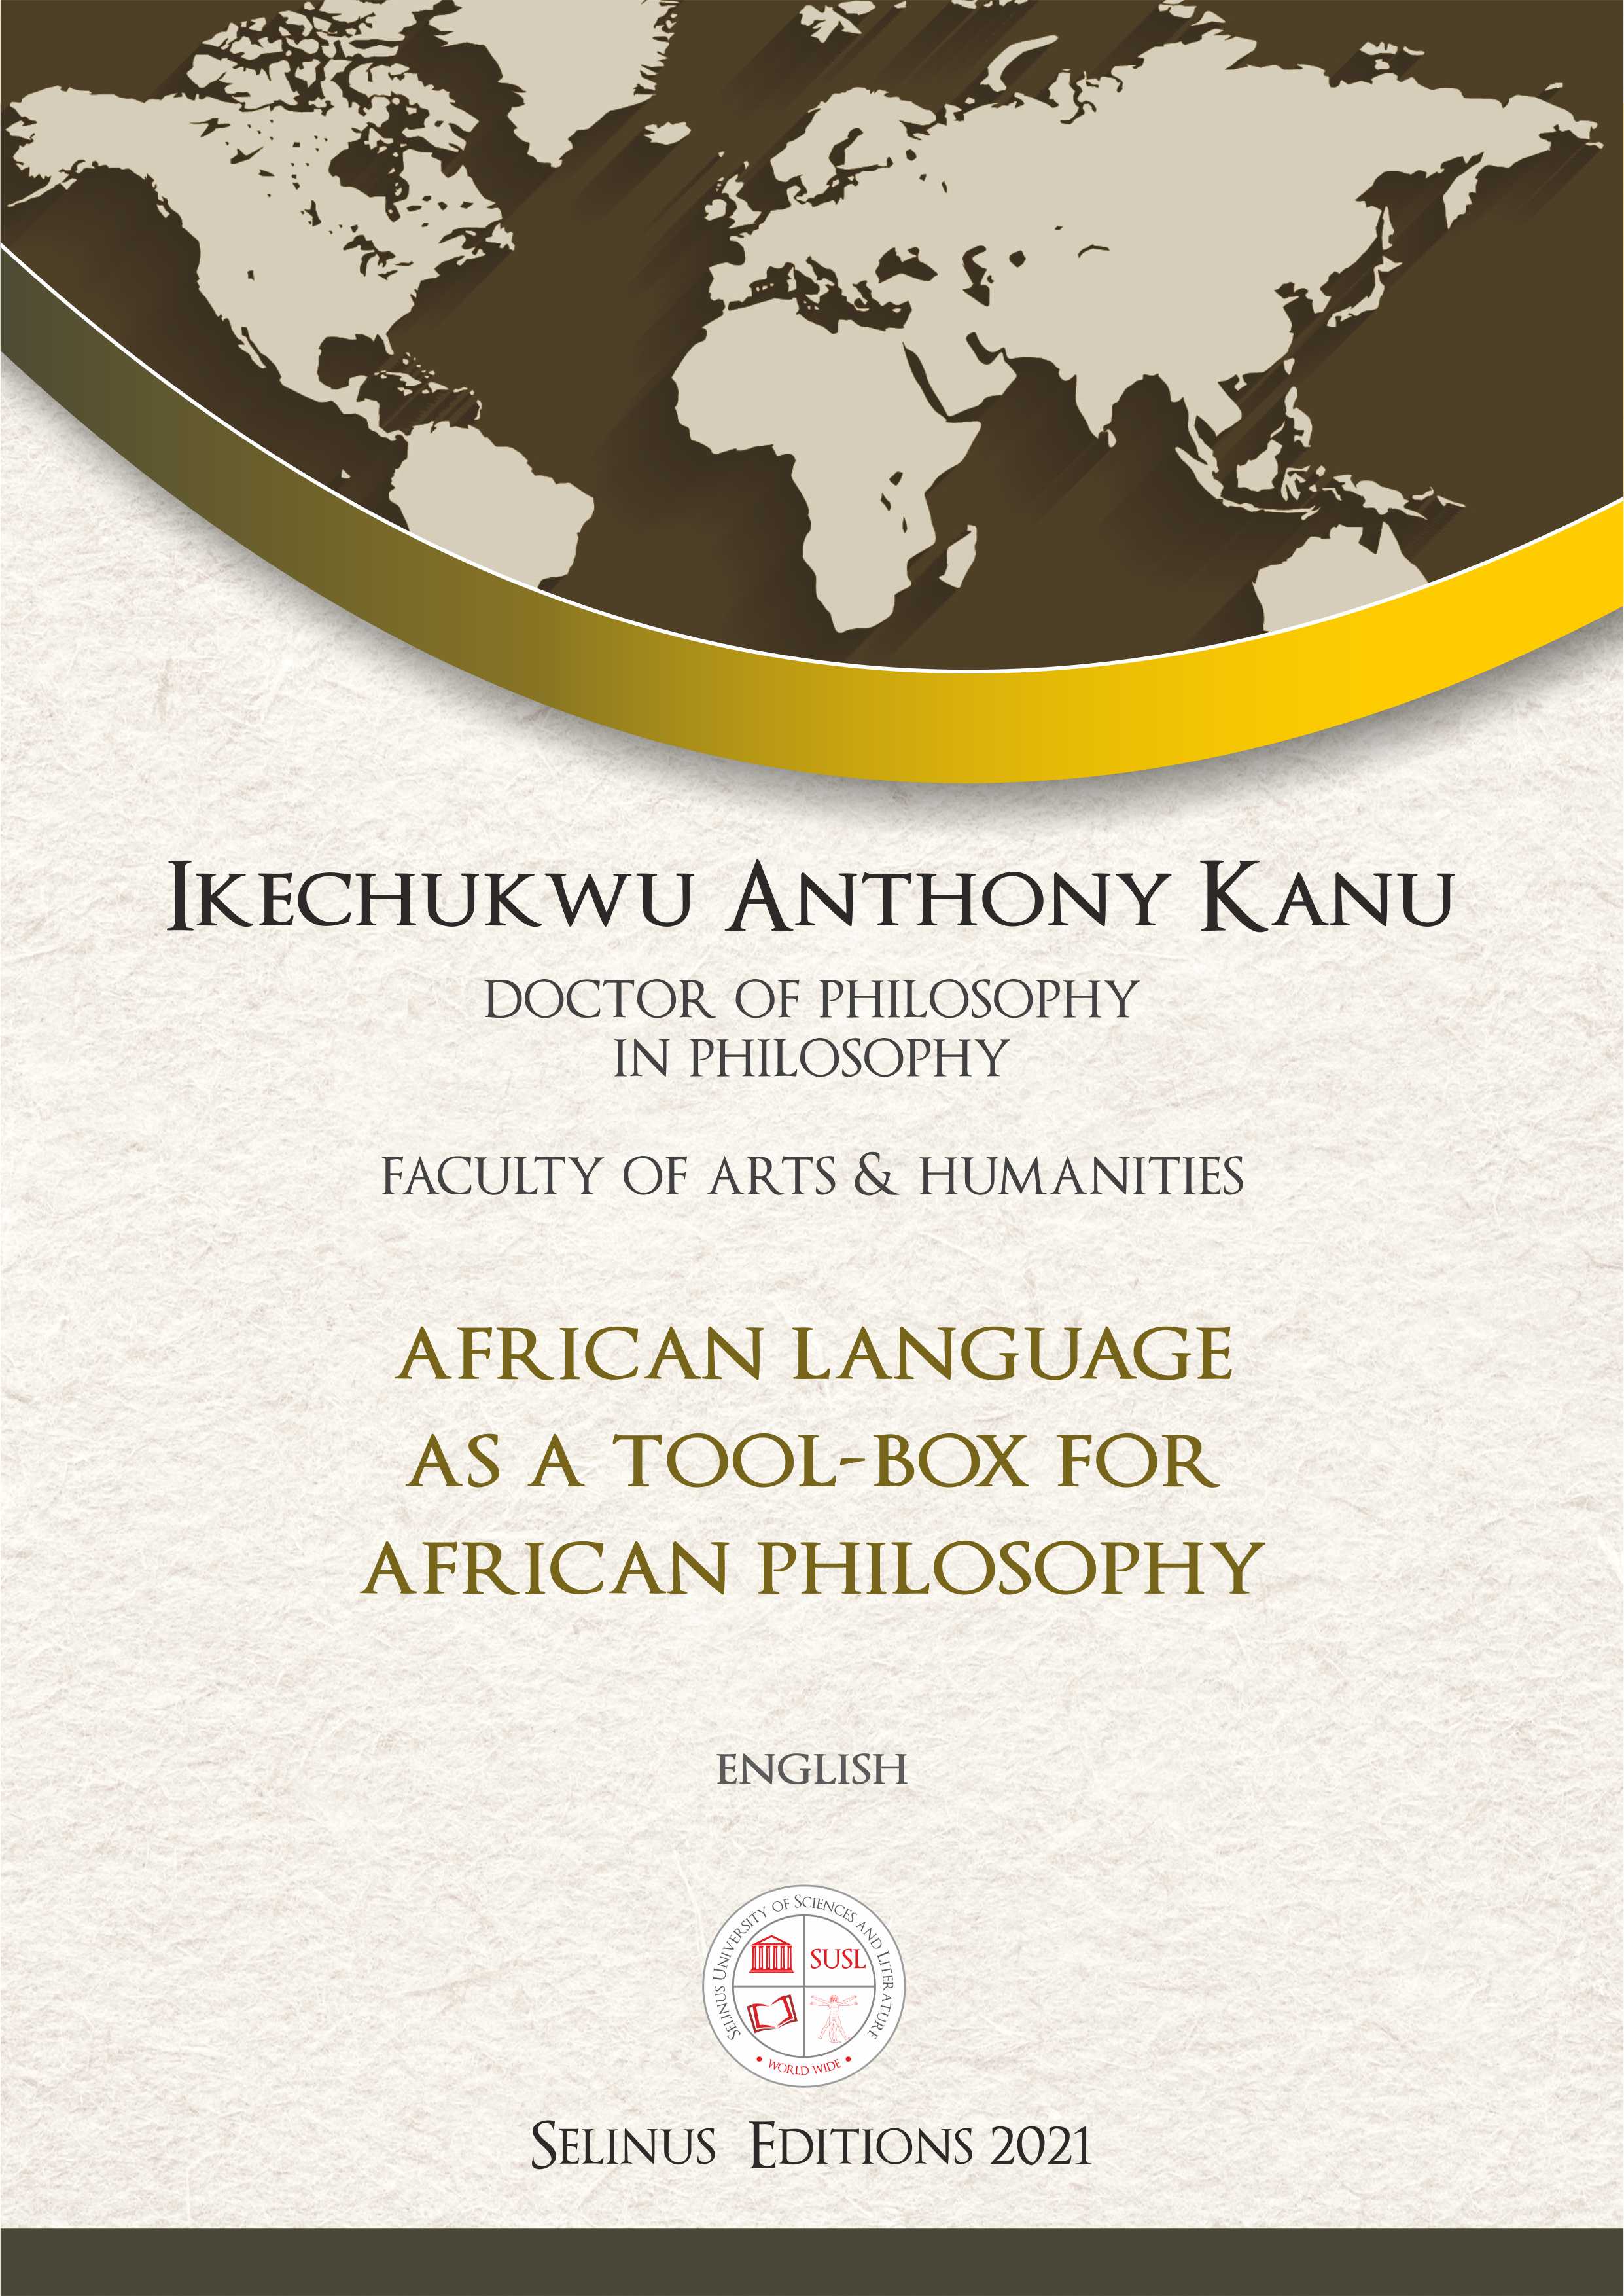 Thesis Ikechukwu Anthony Kanu